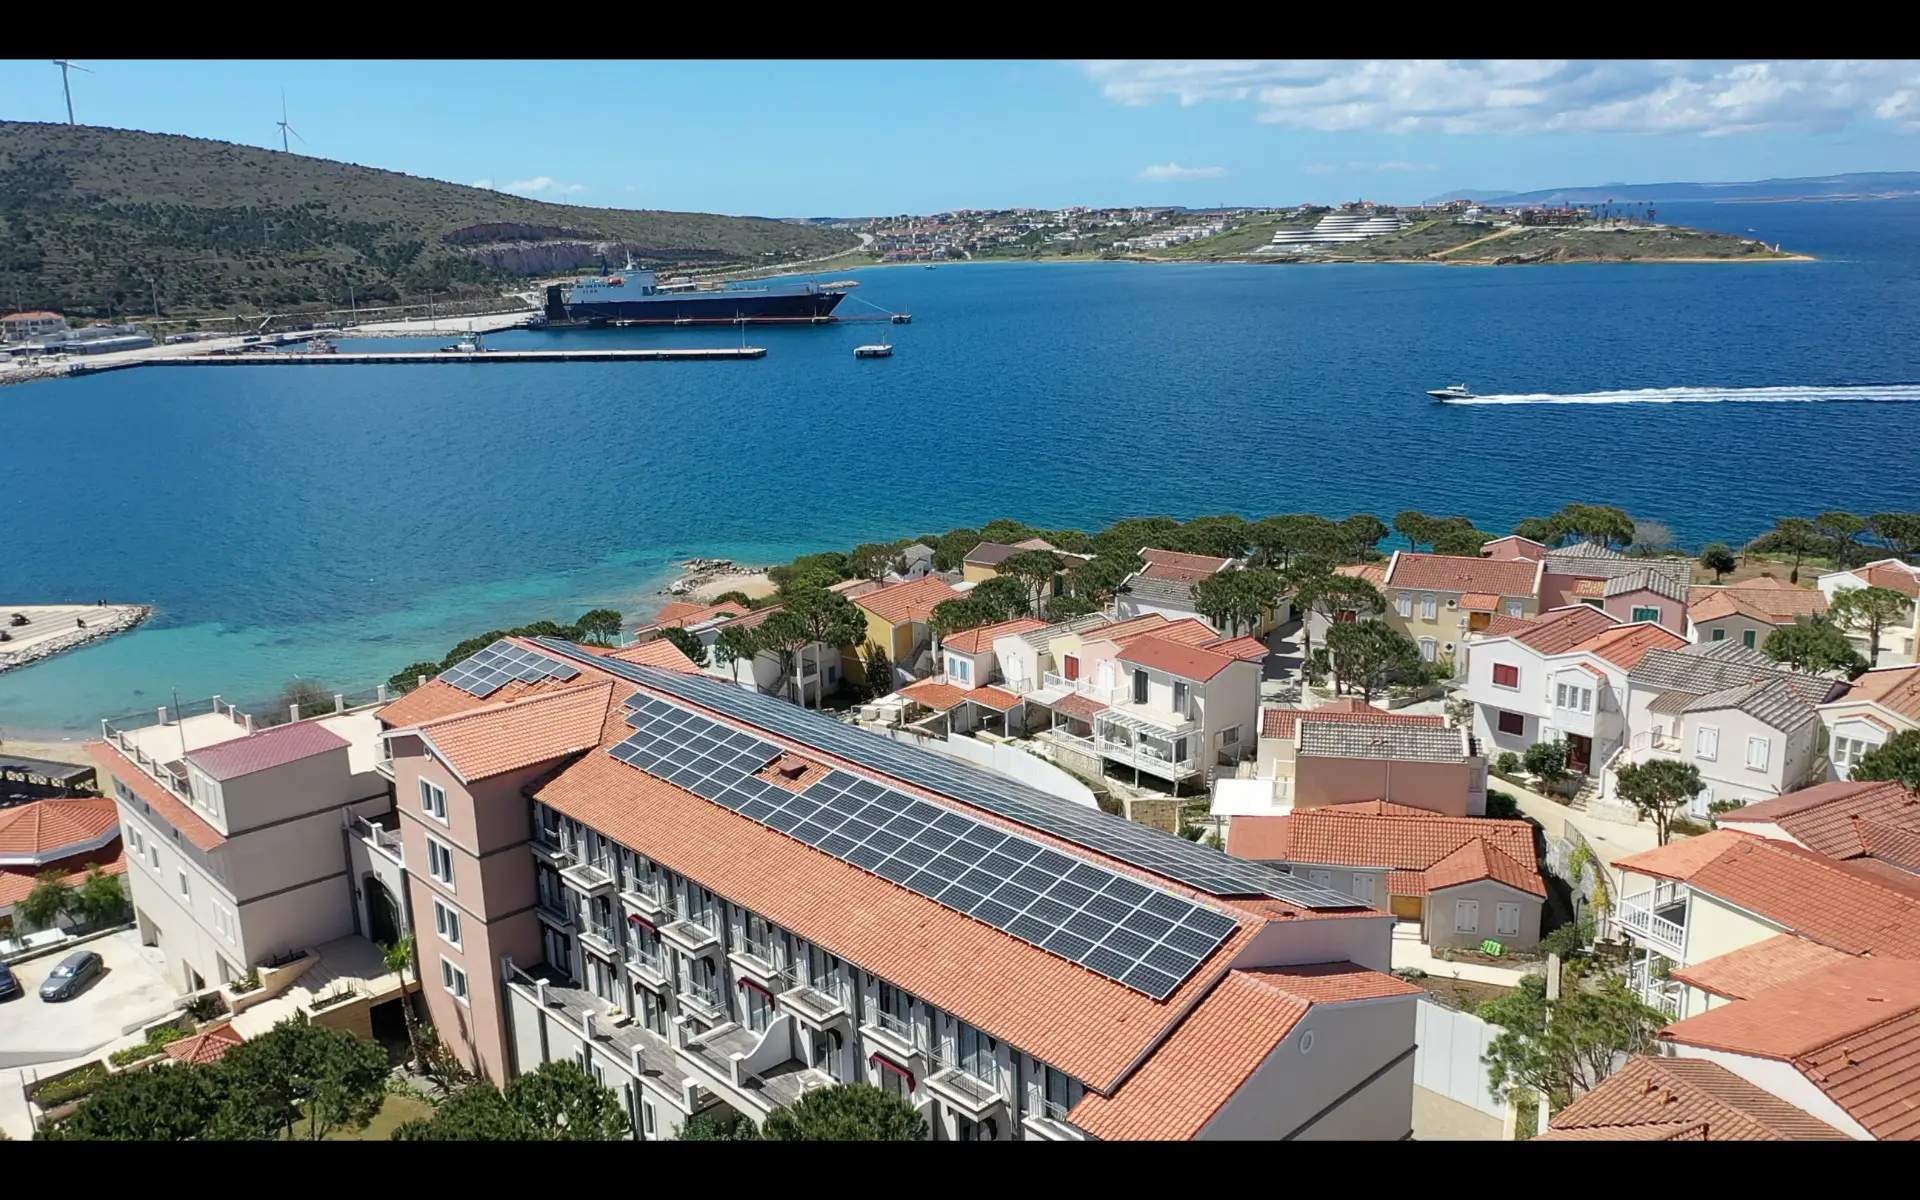 Otelinizde Neden Güneş Enerji Sistemi Kullanmalısınız?